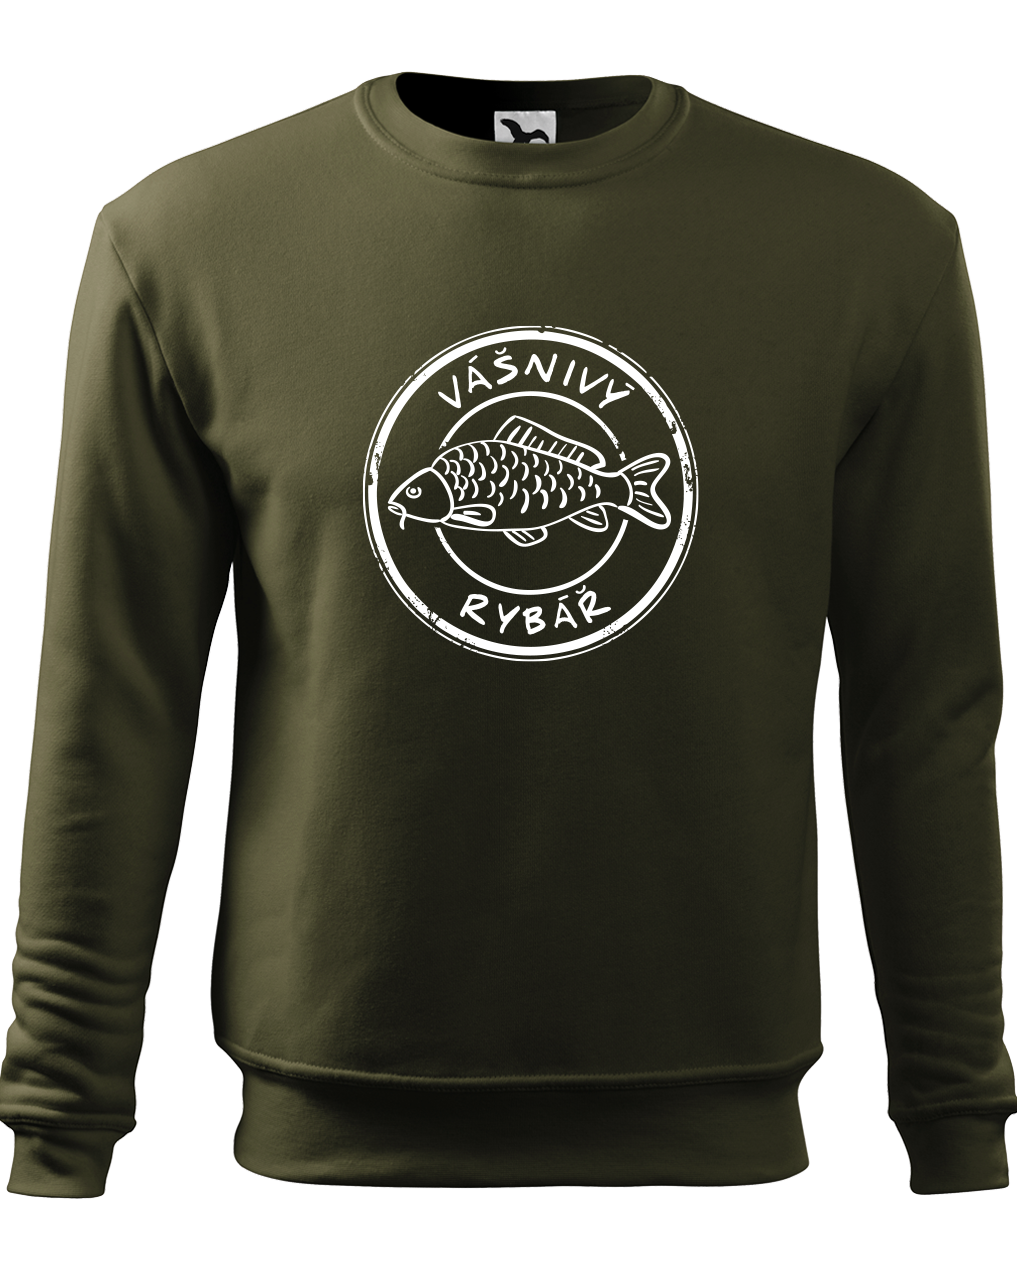 Rybářská mikina - Vášnivý rybář Velikost: L, Barva: Military